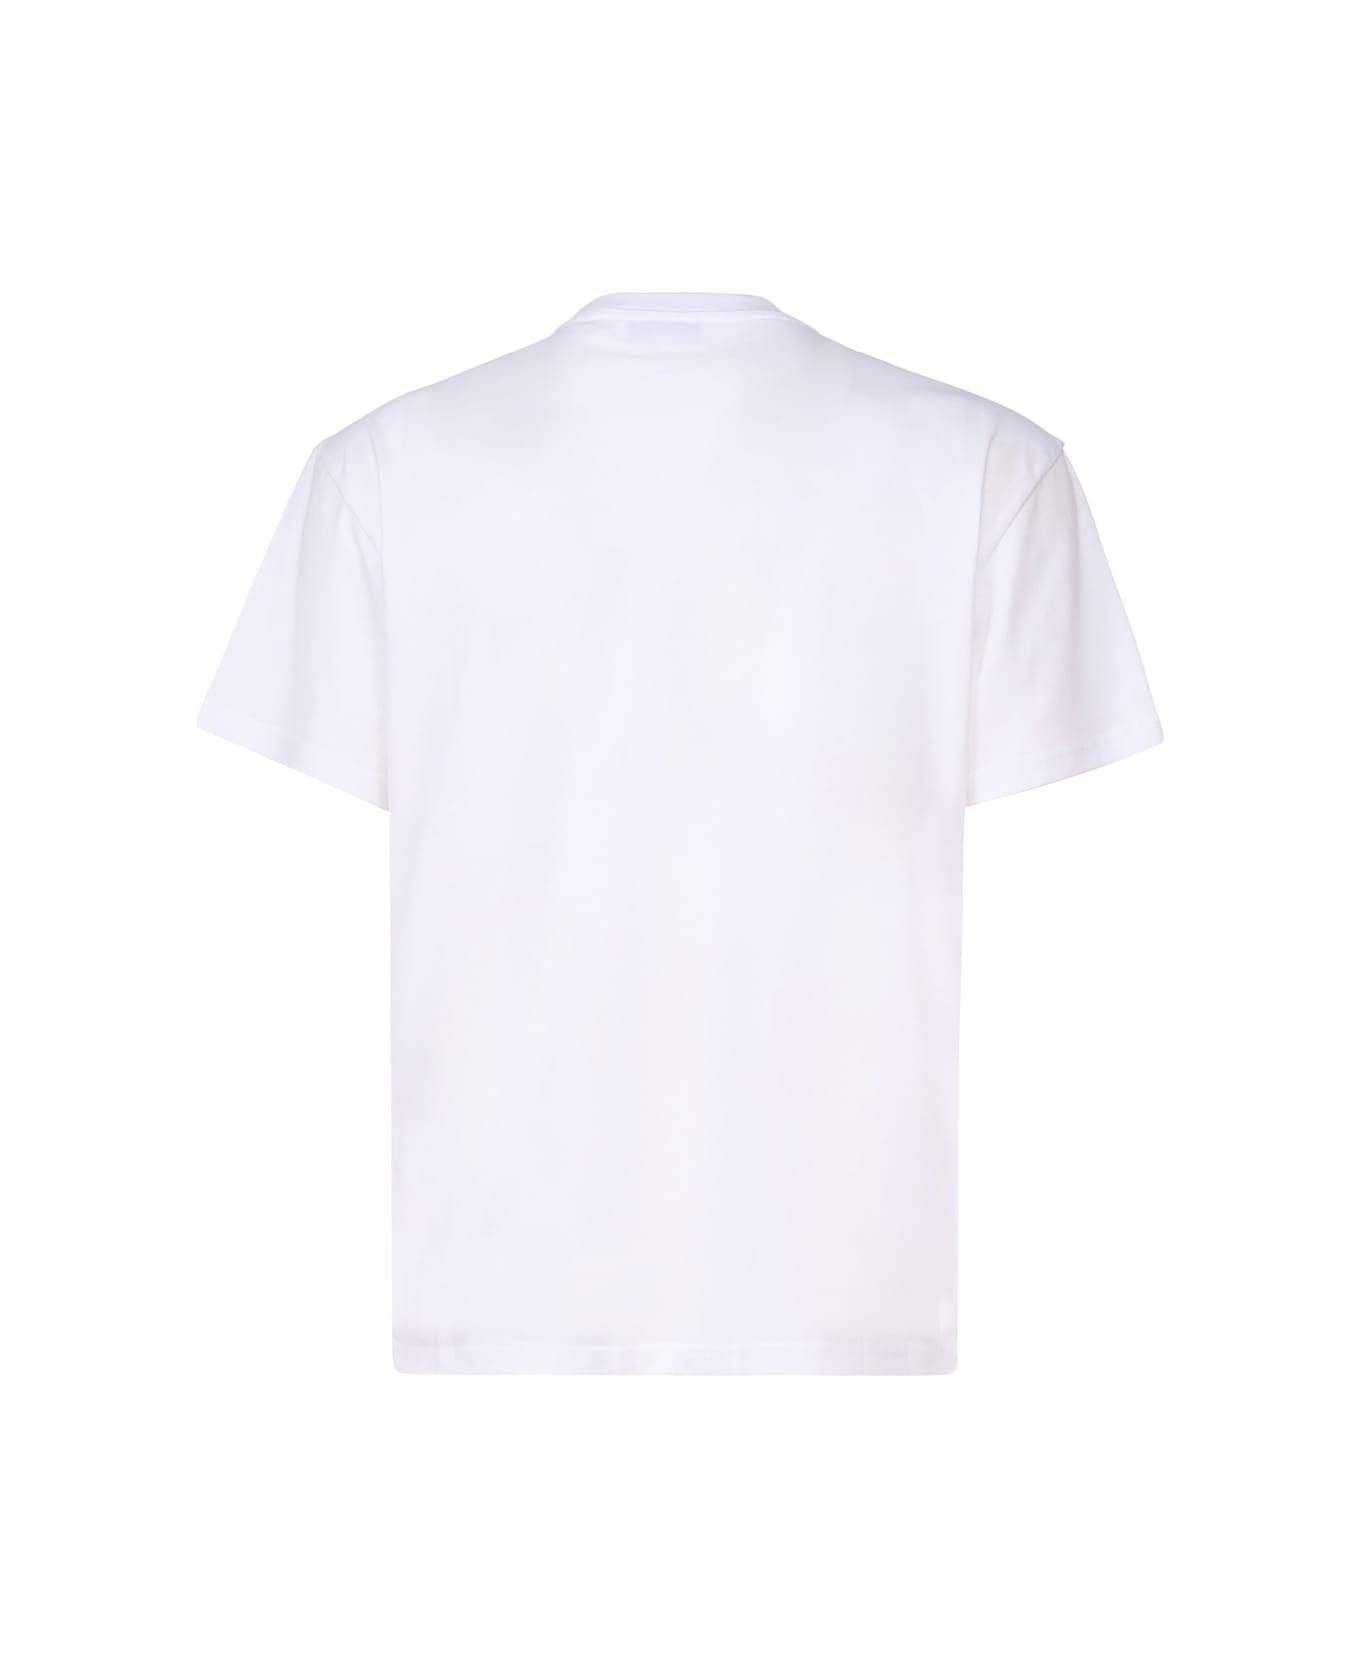 J.W. Anderson Logo T-shirt - White